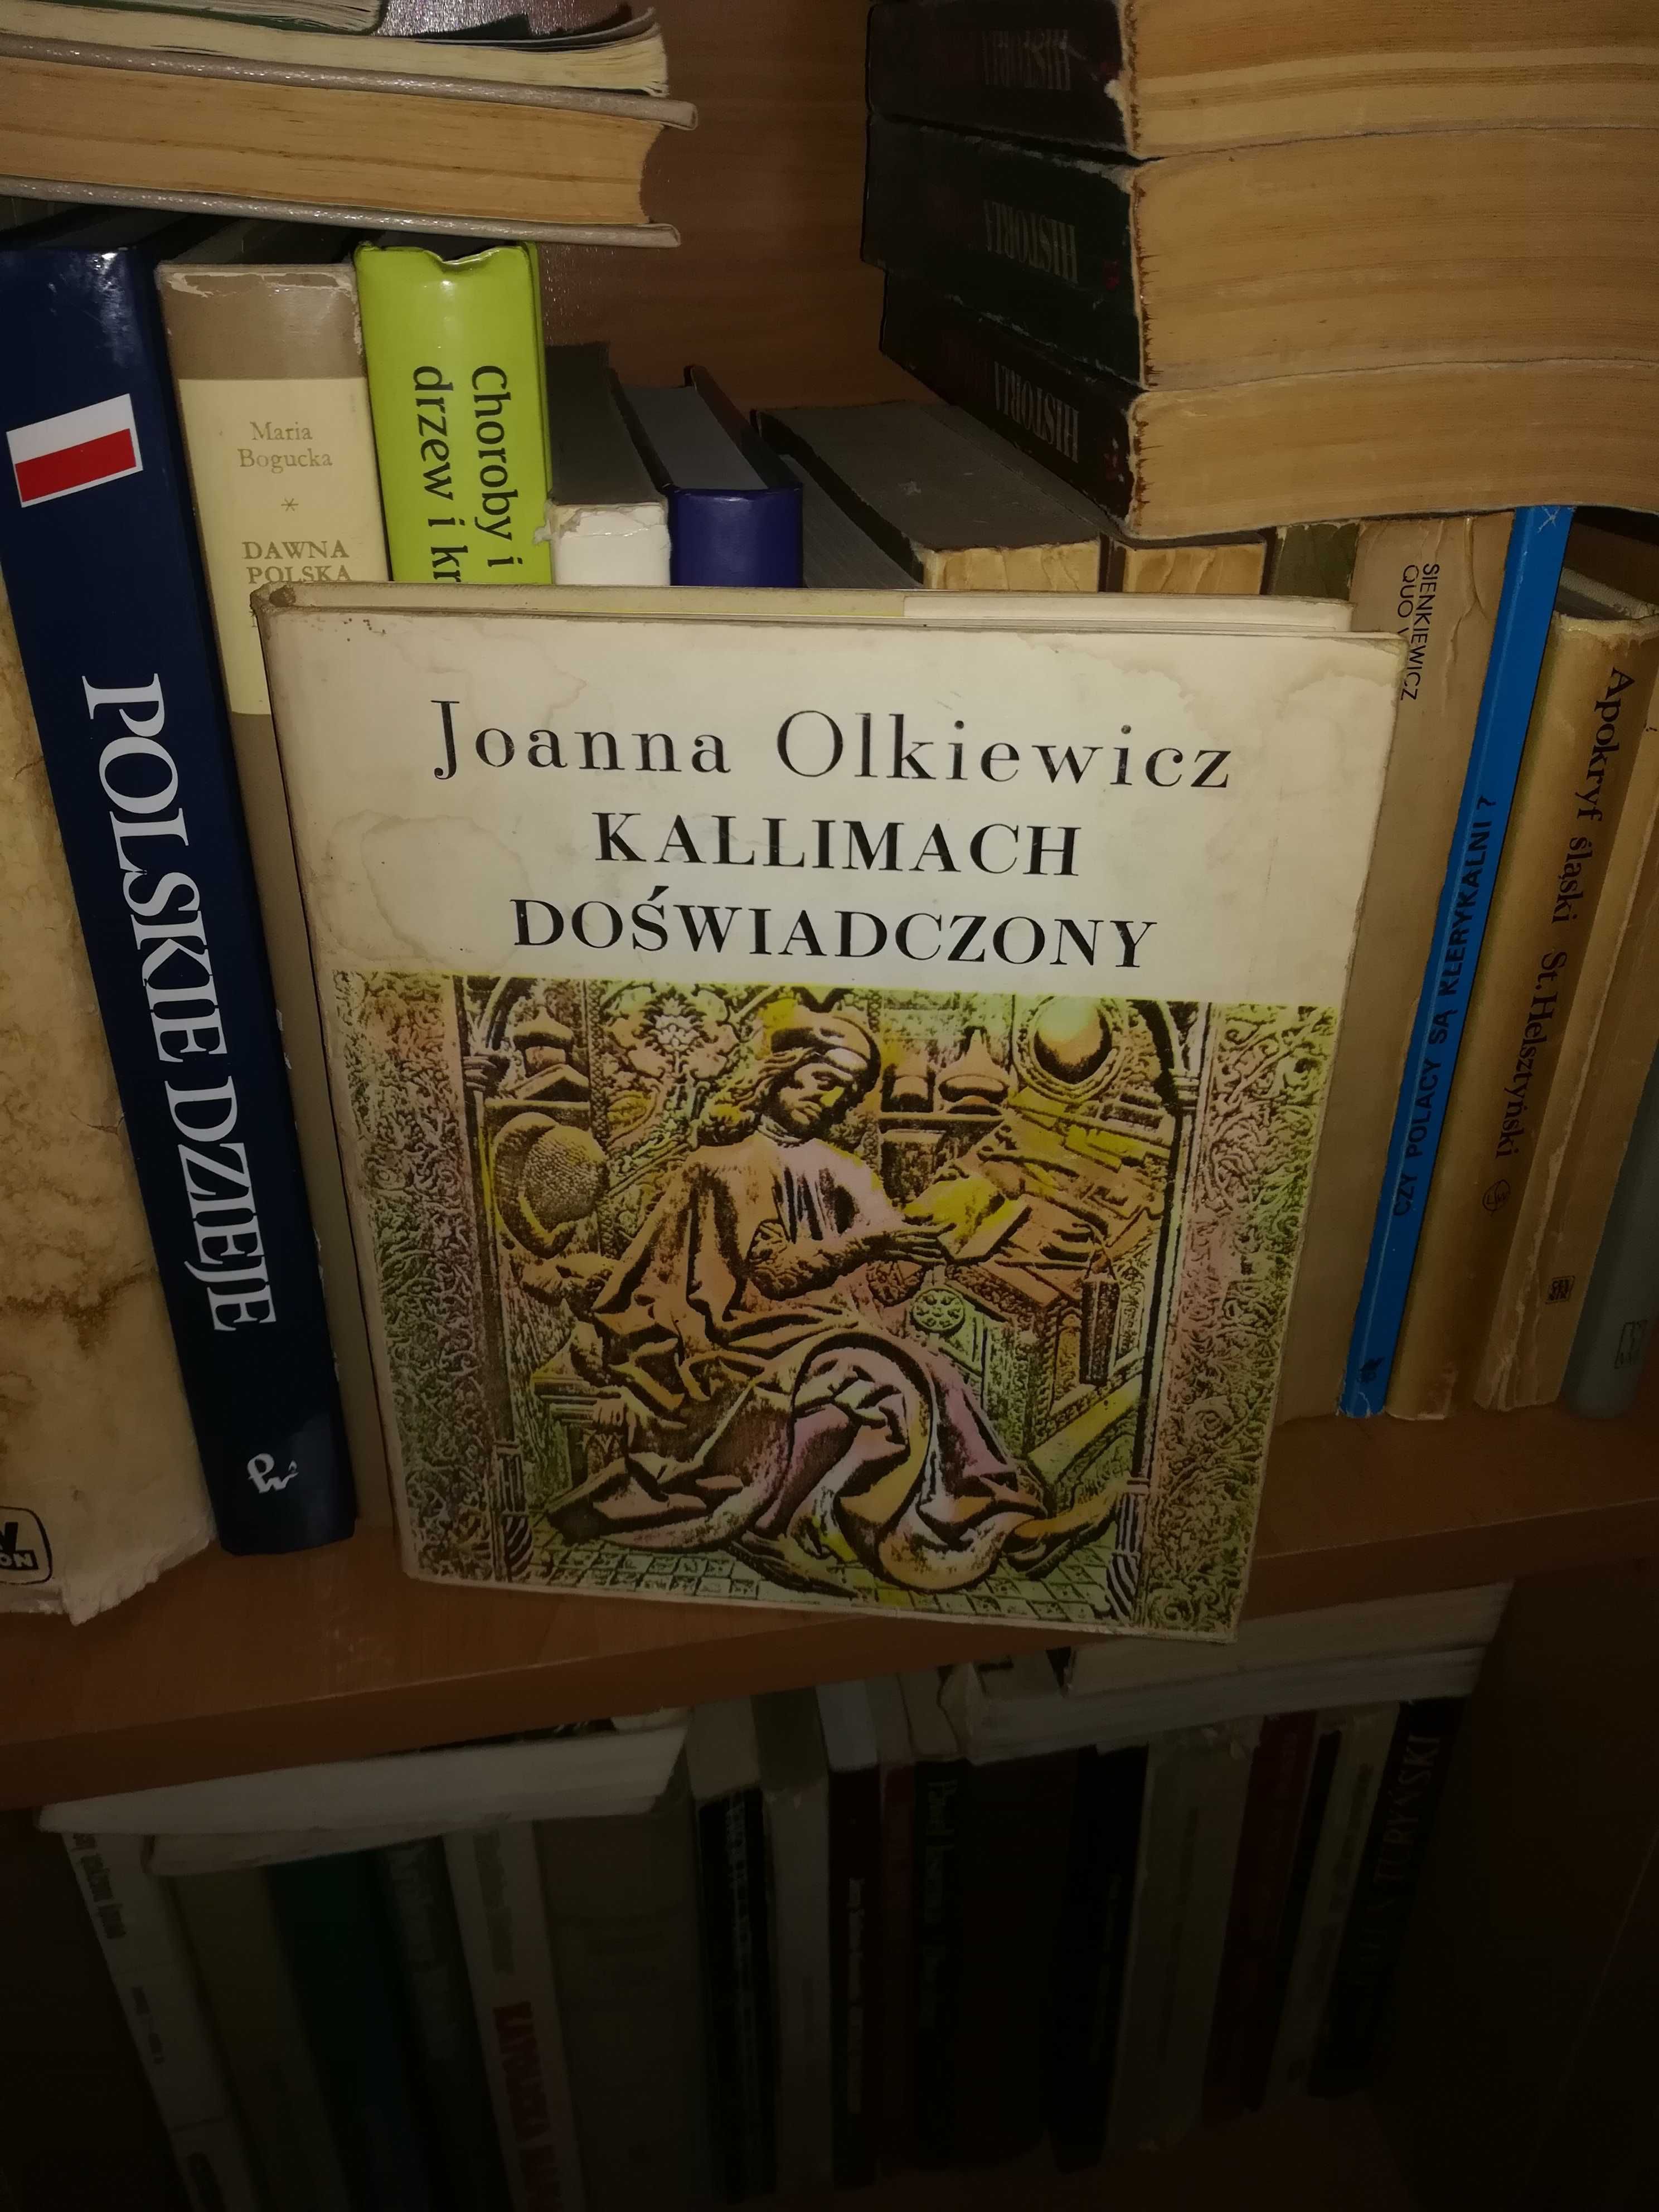 J. Olkiewicz Kallimach doświadczony